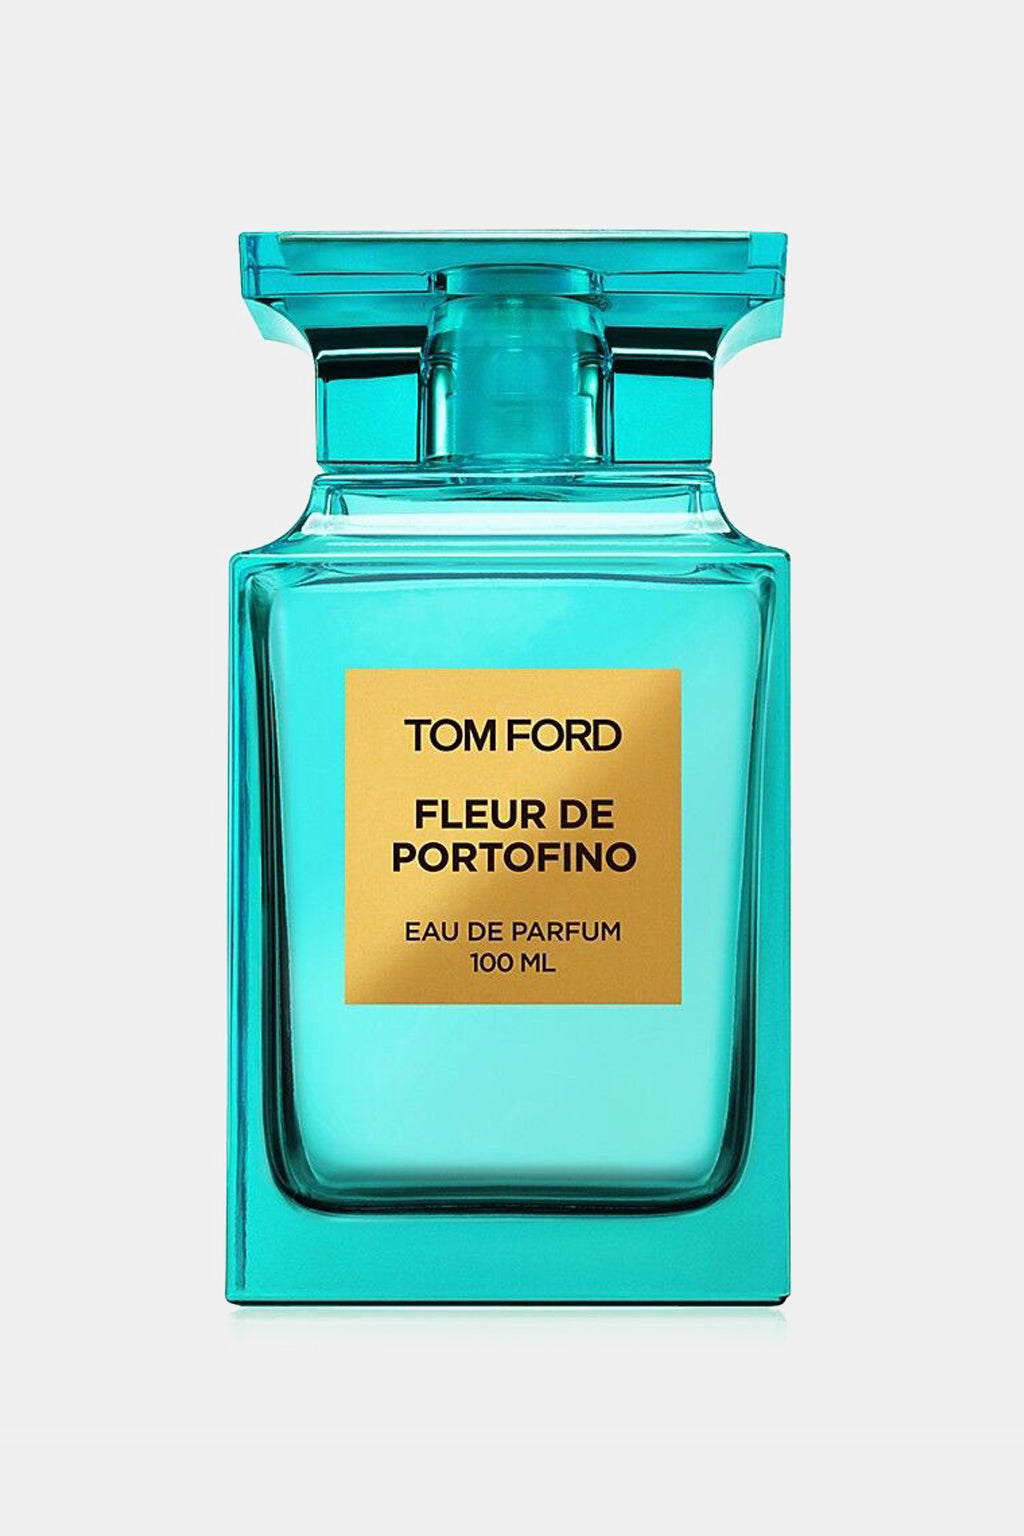 Tom Ford - Fleur De Portofino Eau de Parfum